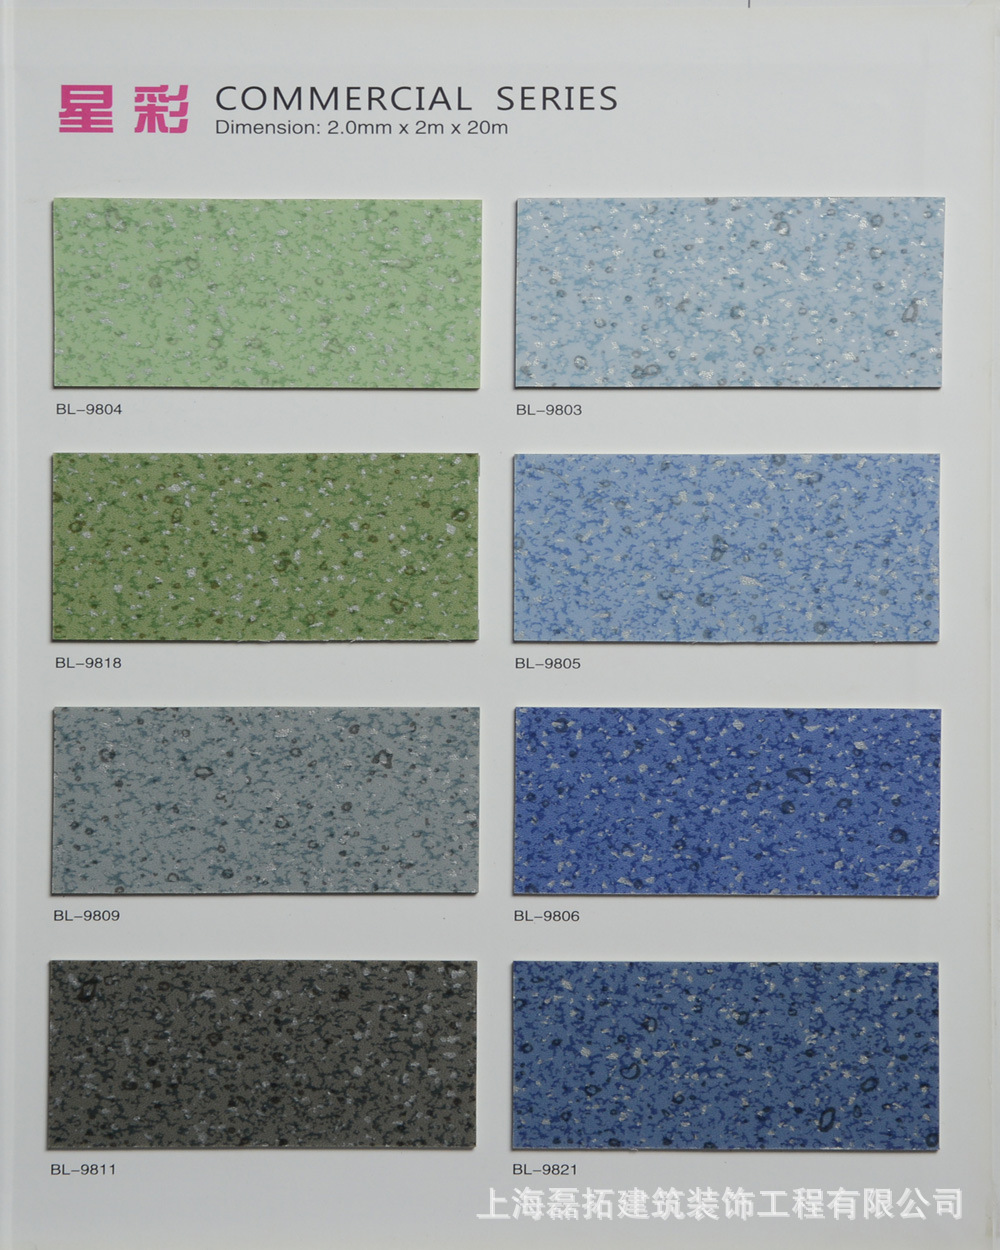 厂家销售宝丽龙星彩系列商用复合卷材pvc地胶垫中国梦塑胶地板